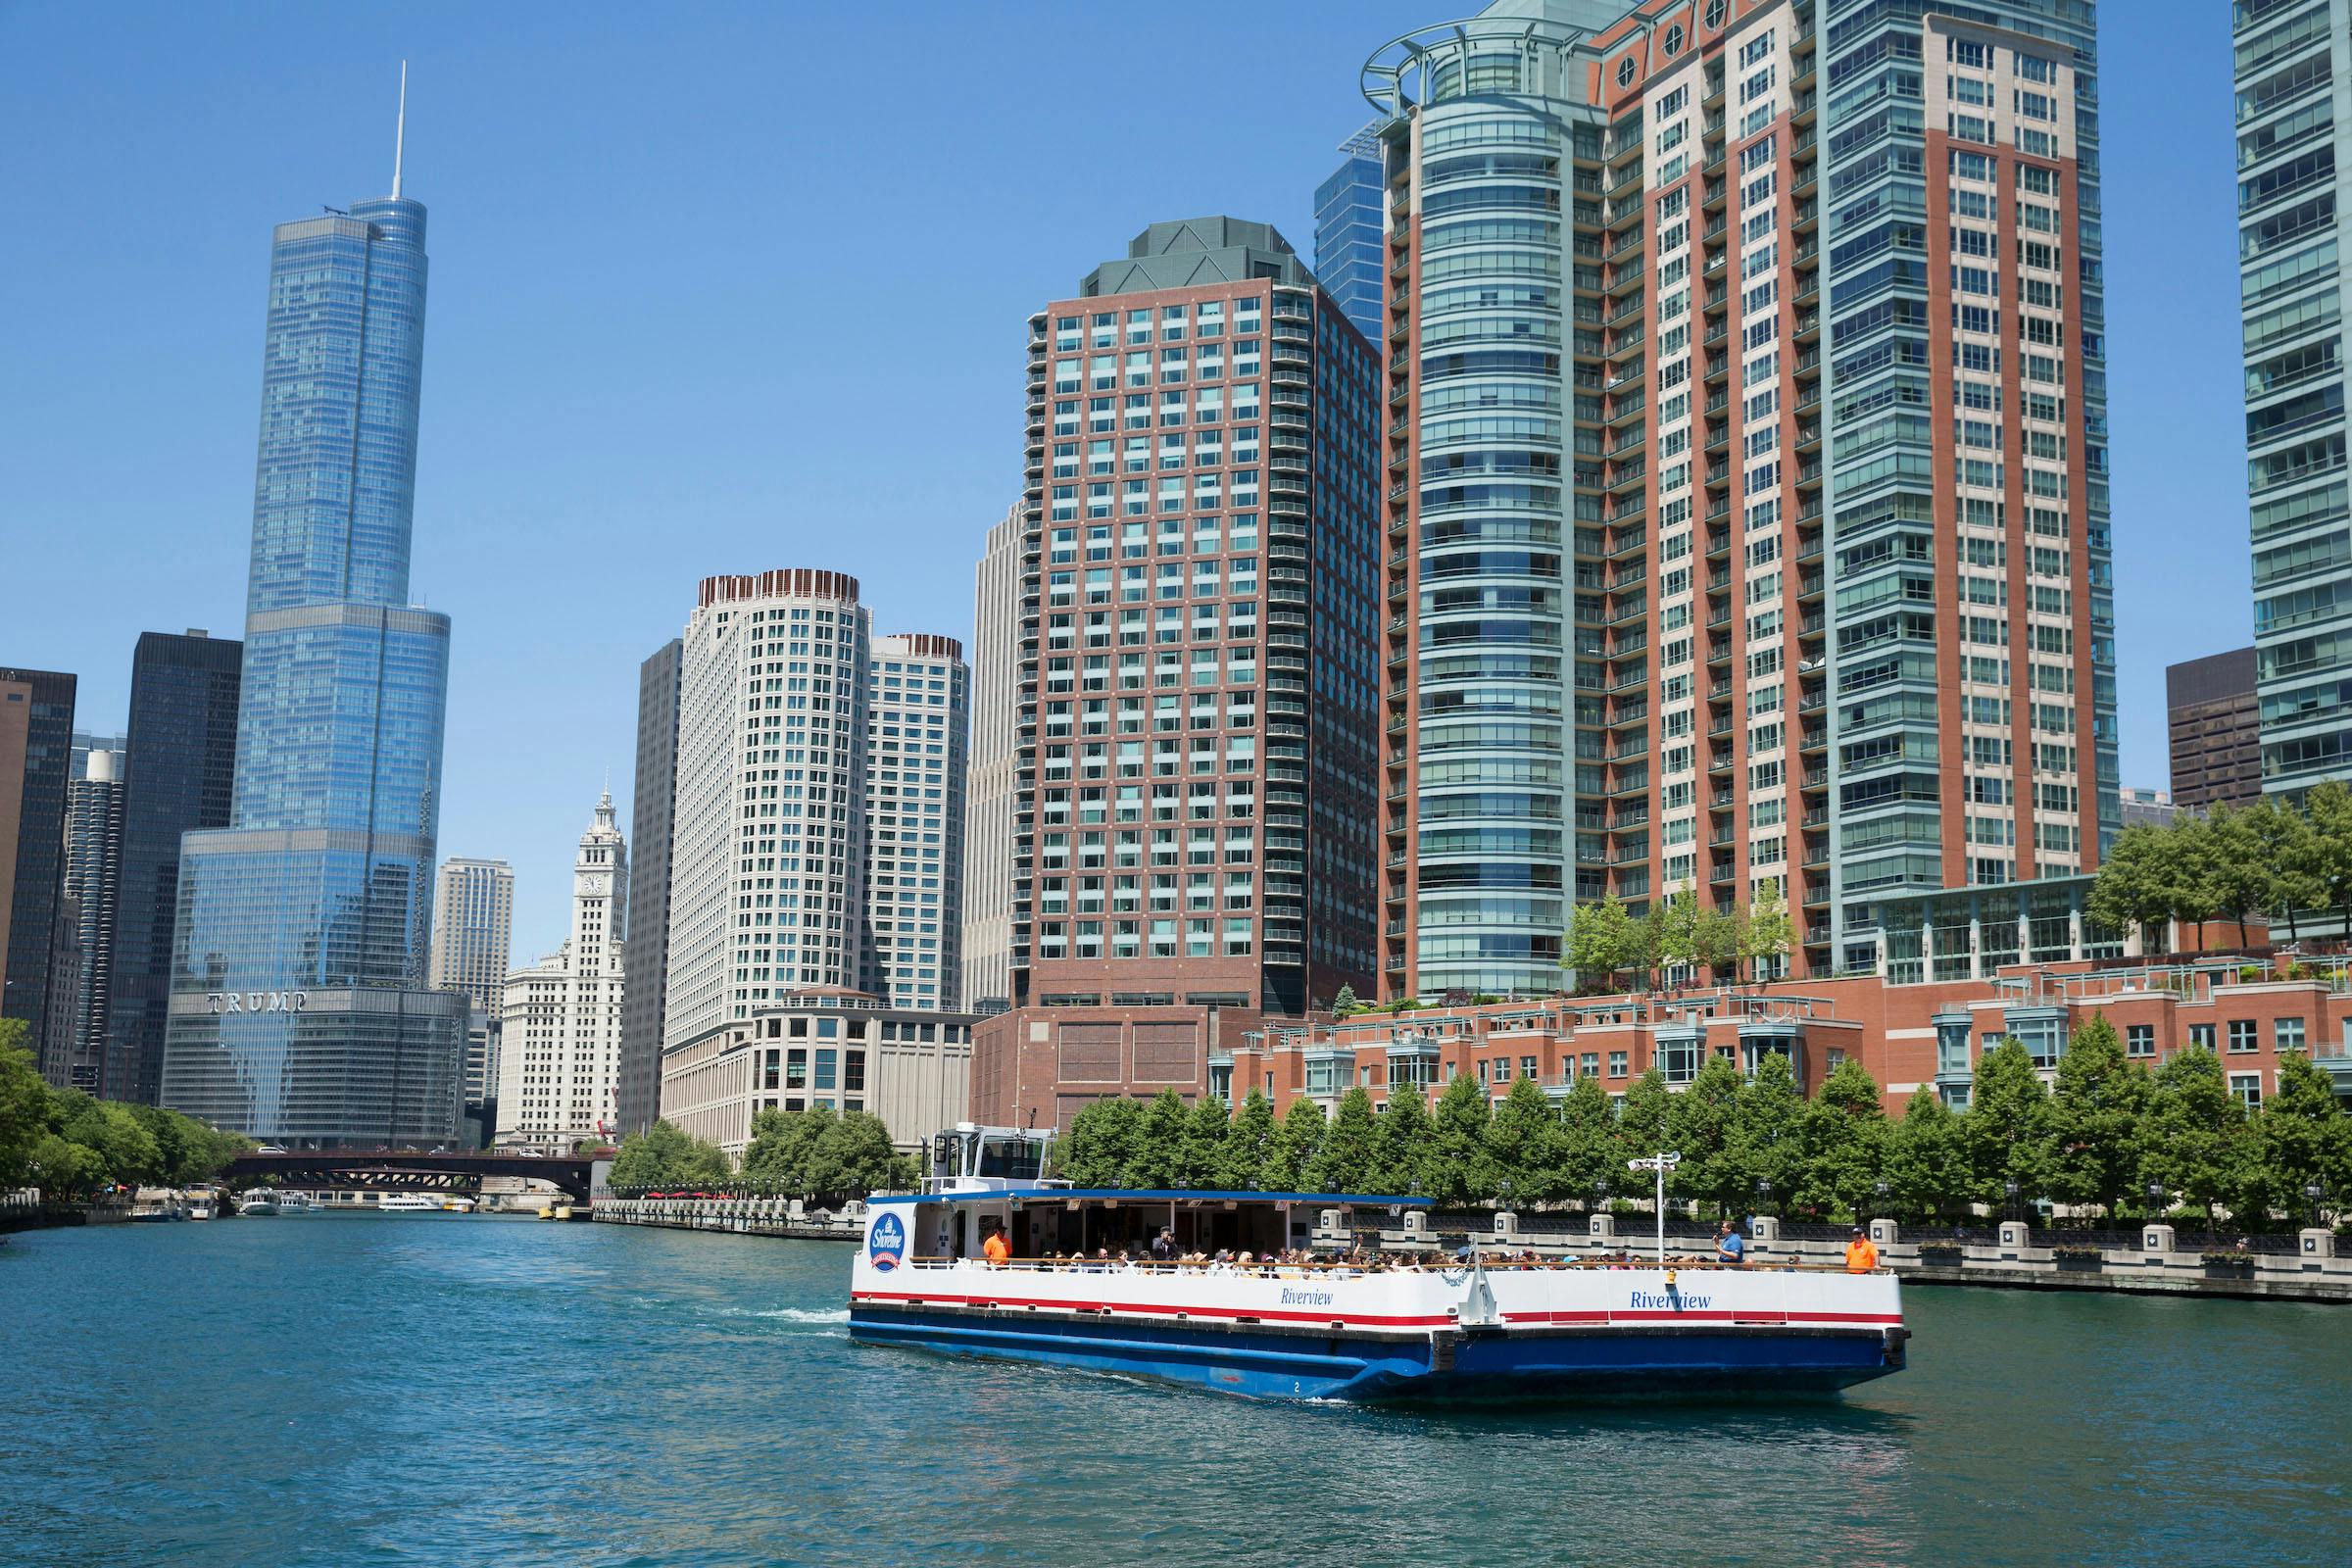 Croisière architecturale sur la rivière Chicago depuis Navy Pier